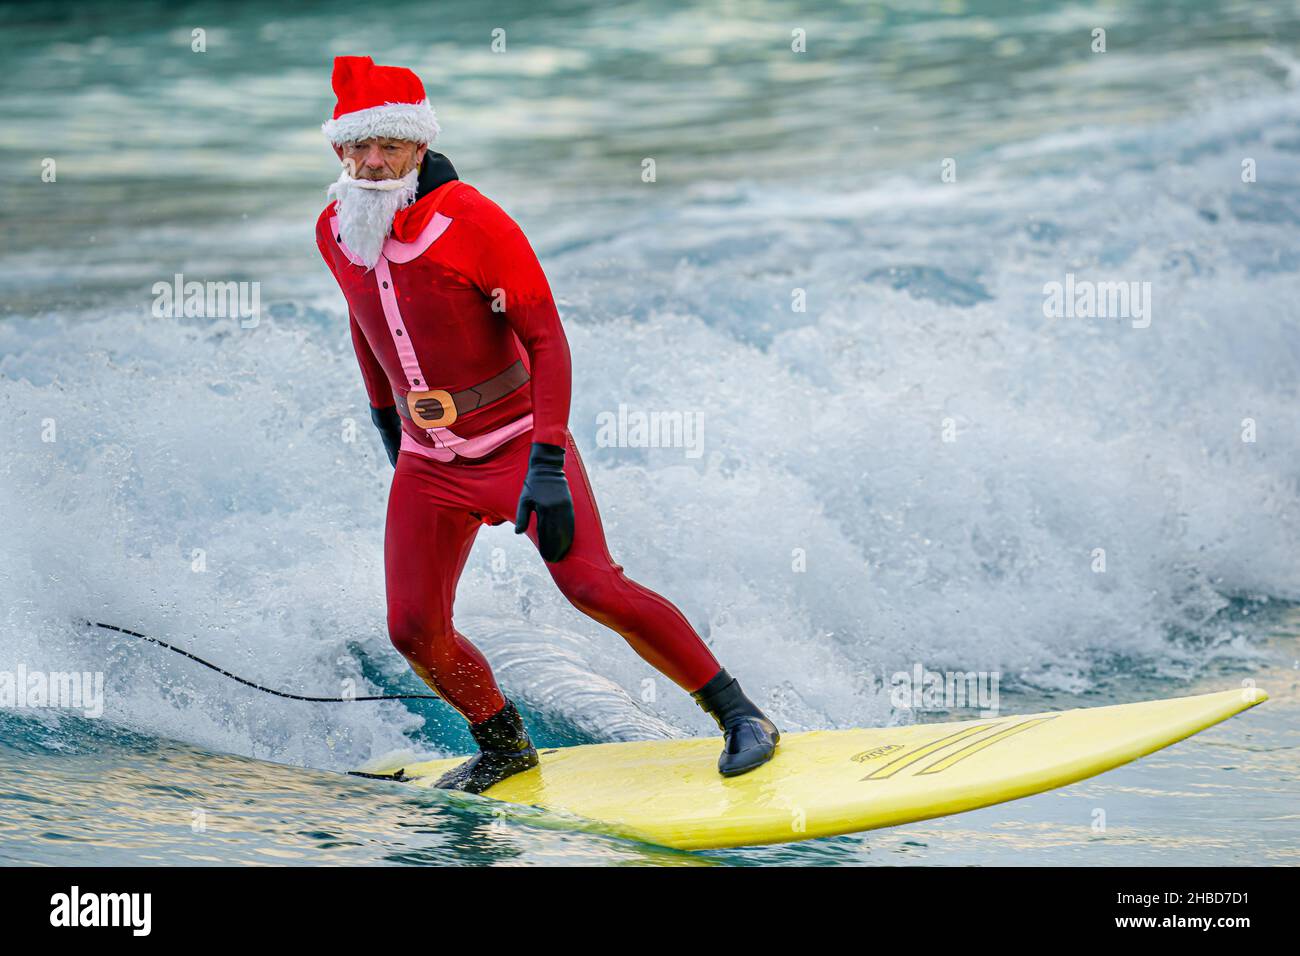 Un surfeur habillé comme le Père Noël fait une vague lors d'un Santa Surf organisé par l'organisme caritatif de surf The Wave Project, où les jeunes, qui connaissent une gamme de problèmes de santé physique et mentale, se rencontrent chaque année pour surfer avec leurs mentors au Wave à Bristol.Date de la photo: Samedi 18 décembre 2021. Banque D'Images